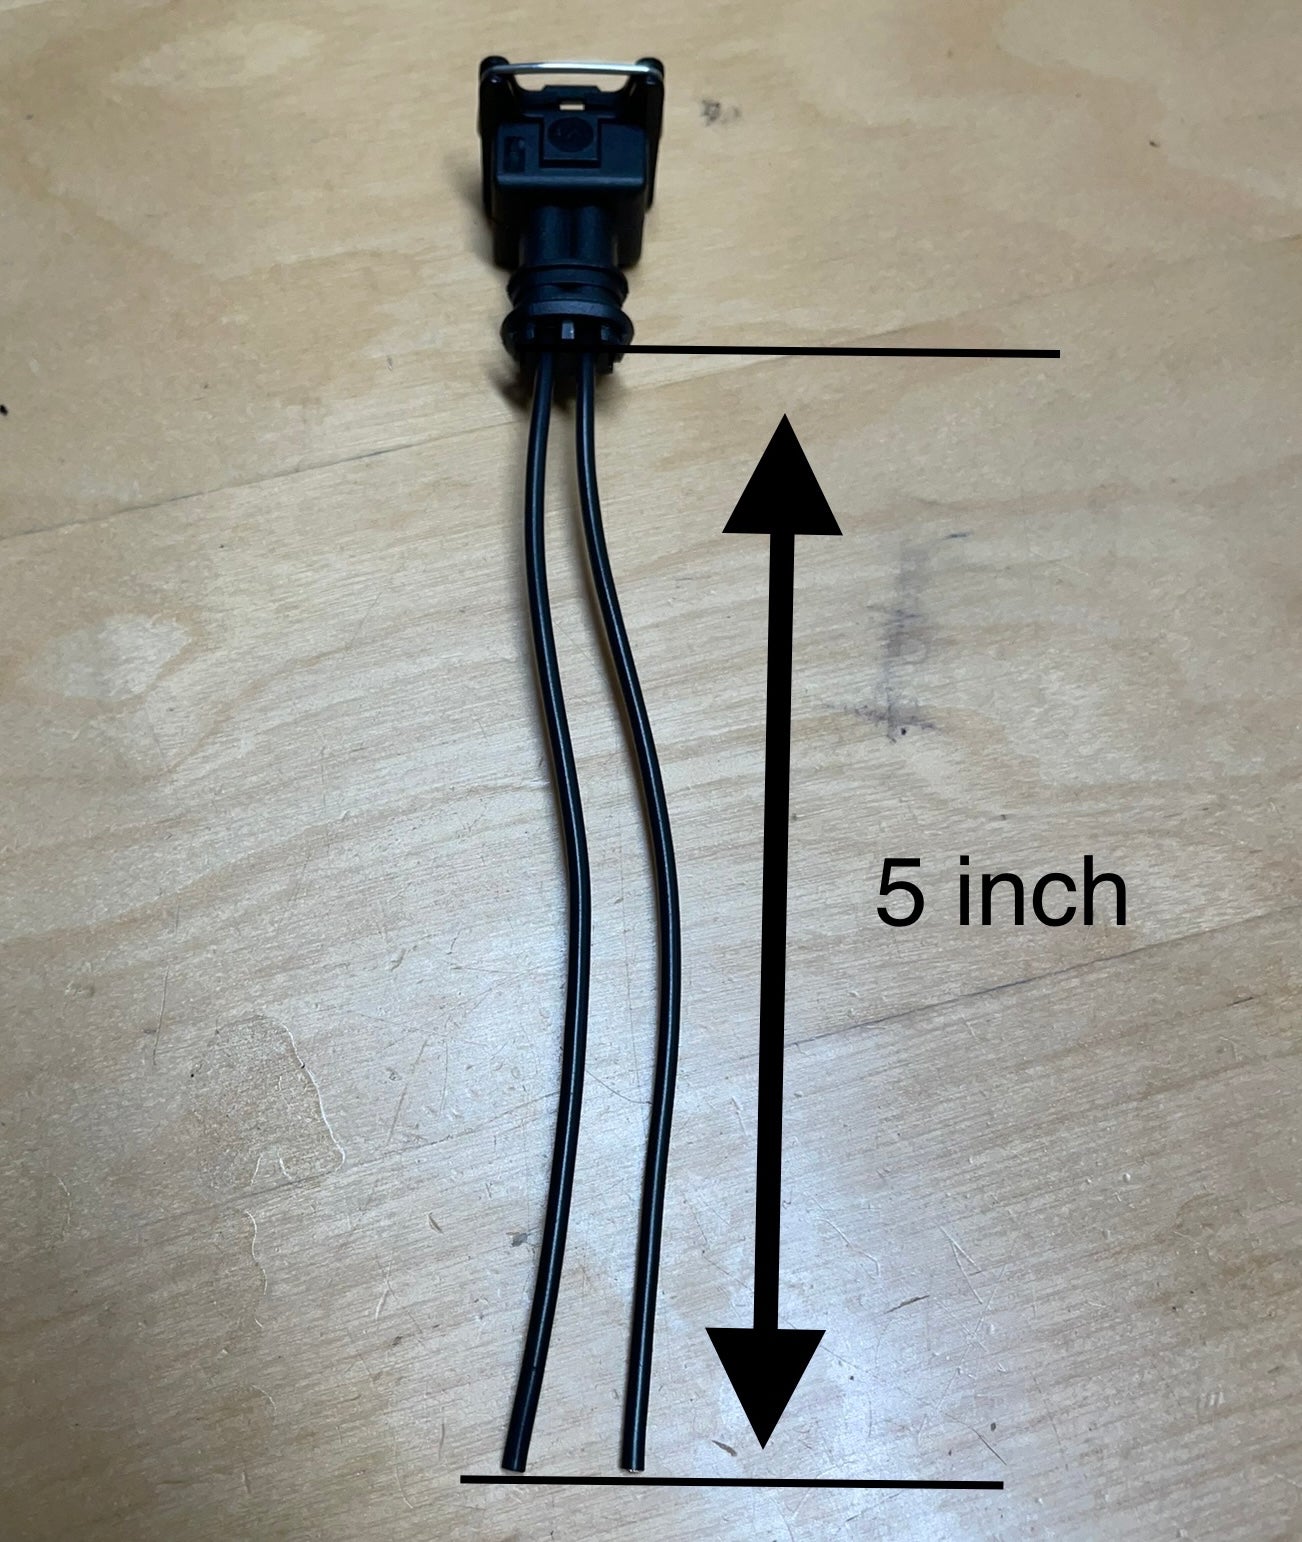 2 Pin BOSCH Style Connector for BMW E30 E34 E36